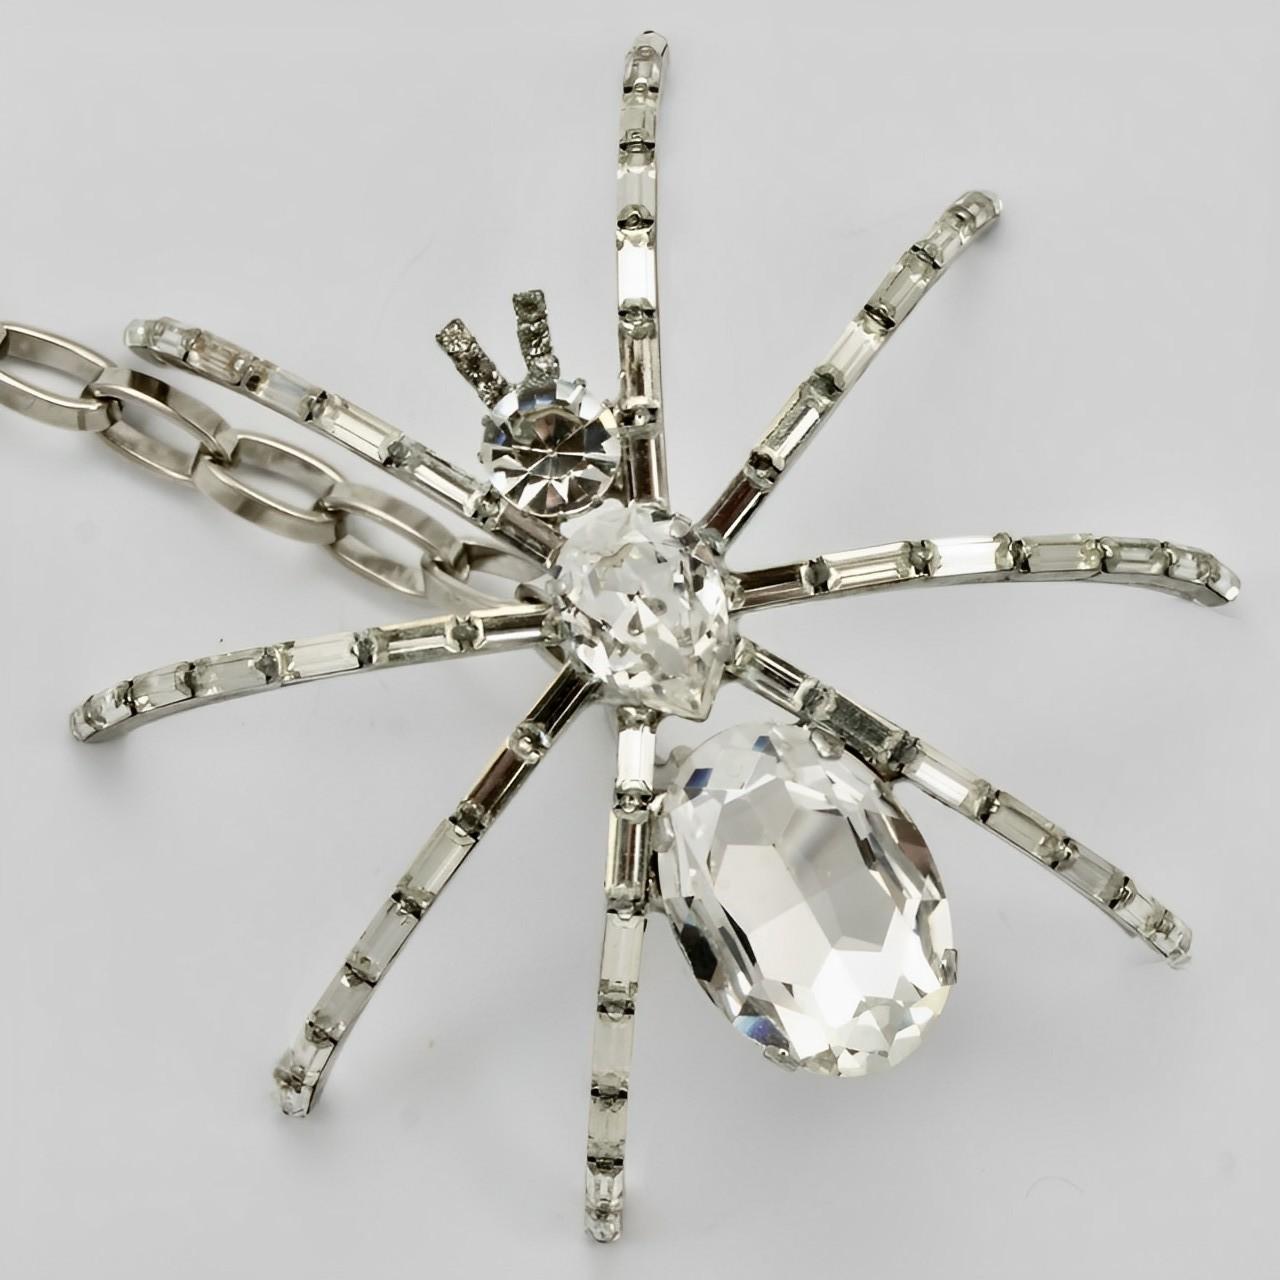 
Butler and Wilson merveilleuse ceinture en chaîne araignée en argent et cristal. L'araignée a des baguettes pour les pattes et des cristaux ronds, ovales et en forme de goutte d'eau pour le corps, ils sont sertis. La chaîne se règle à l'aide d'un